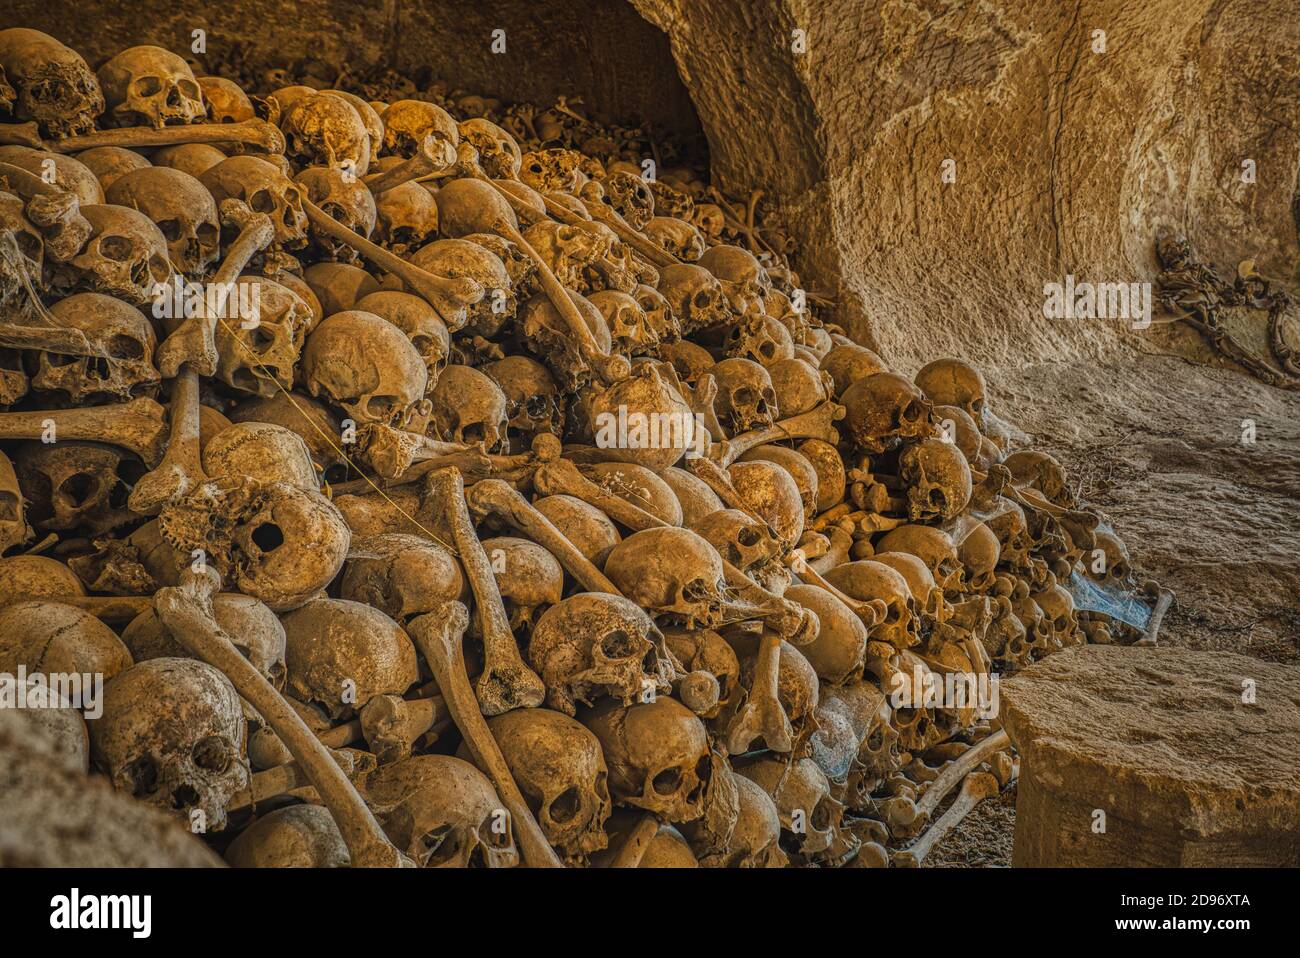 Le détail effrayant d'une pile de crânes et d'os dans une crypte porte le concept de la mort et de la valeur de la vie et l'illustration de l'après-vie. Motif sombre de crânes et d'os Banque D'Images